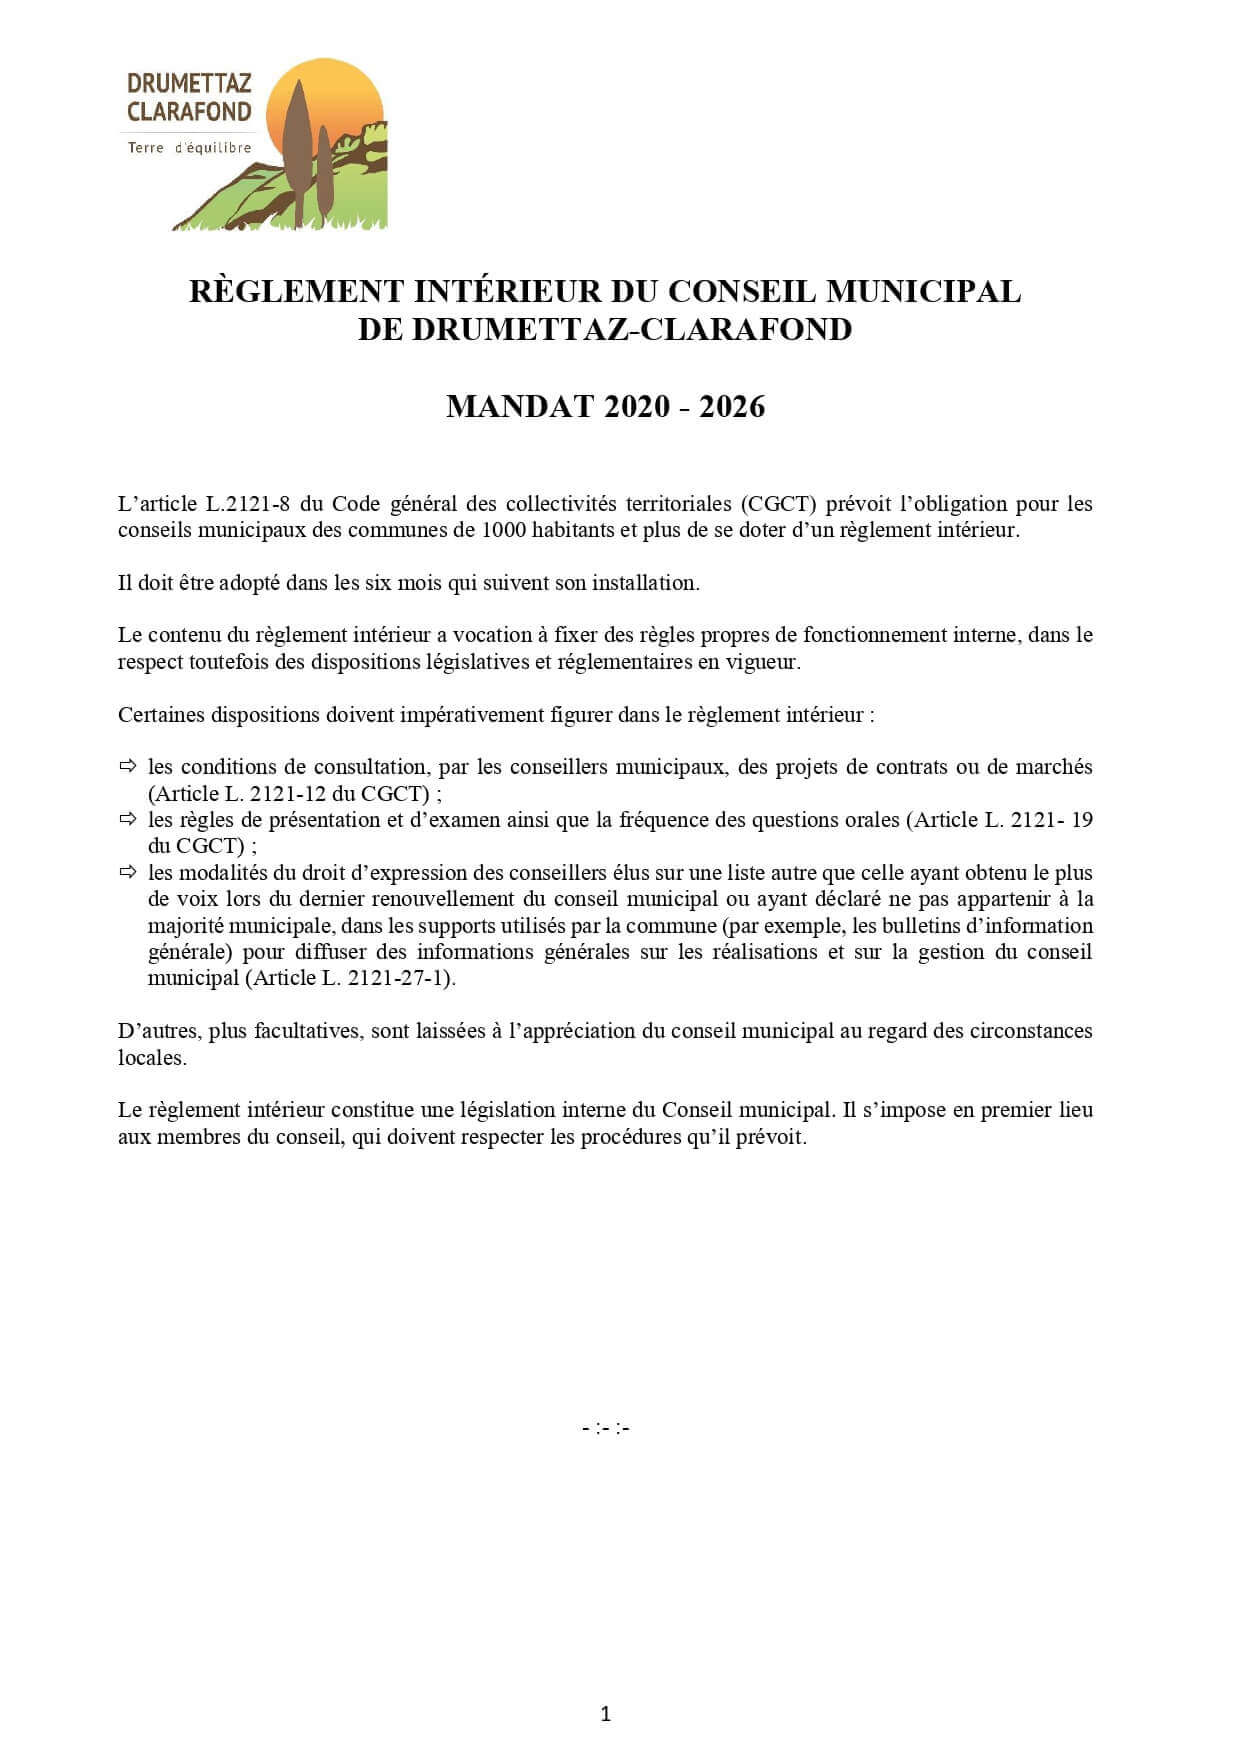 Réglement intérieur de conseil municipal de Drumettaz-Clarafond